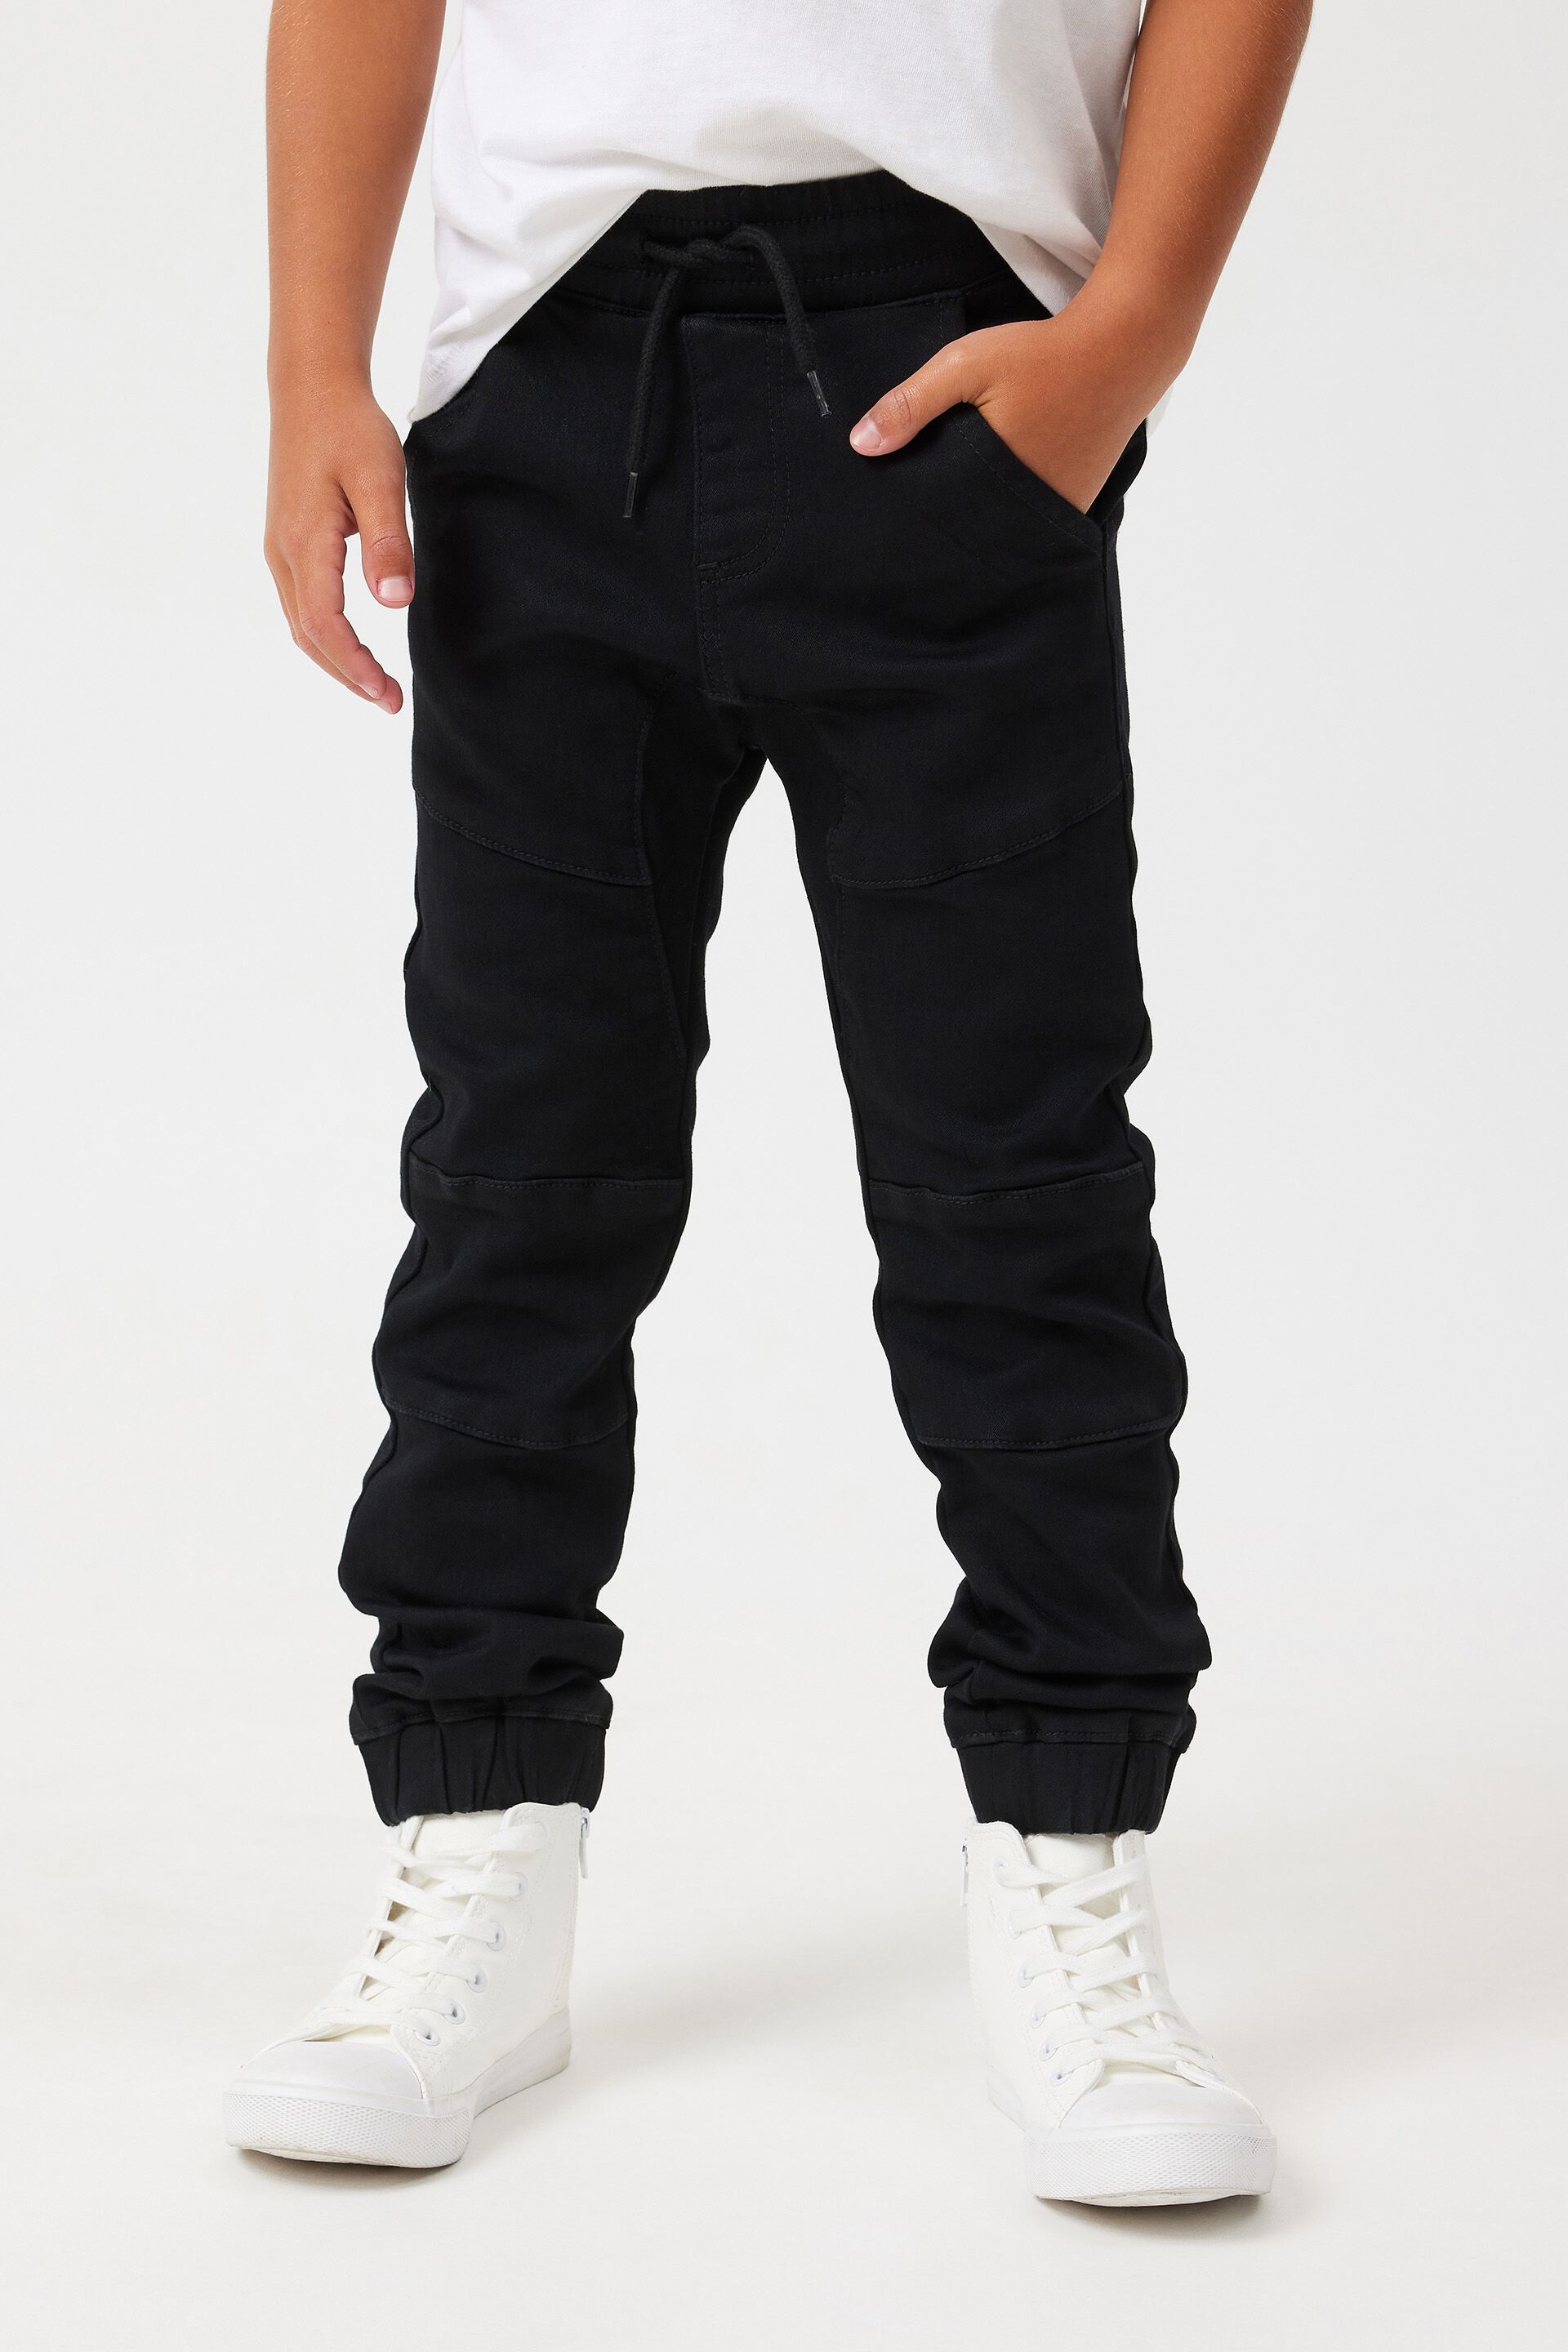 Buy Boys Black Regular Fit Patterned Track Pants Online - 765949 | Allen  Solly